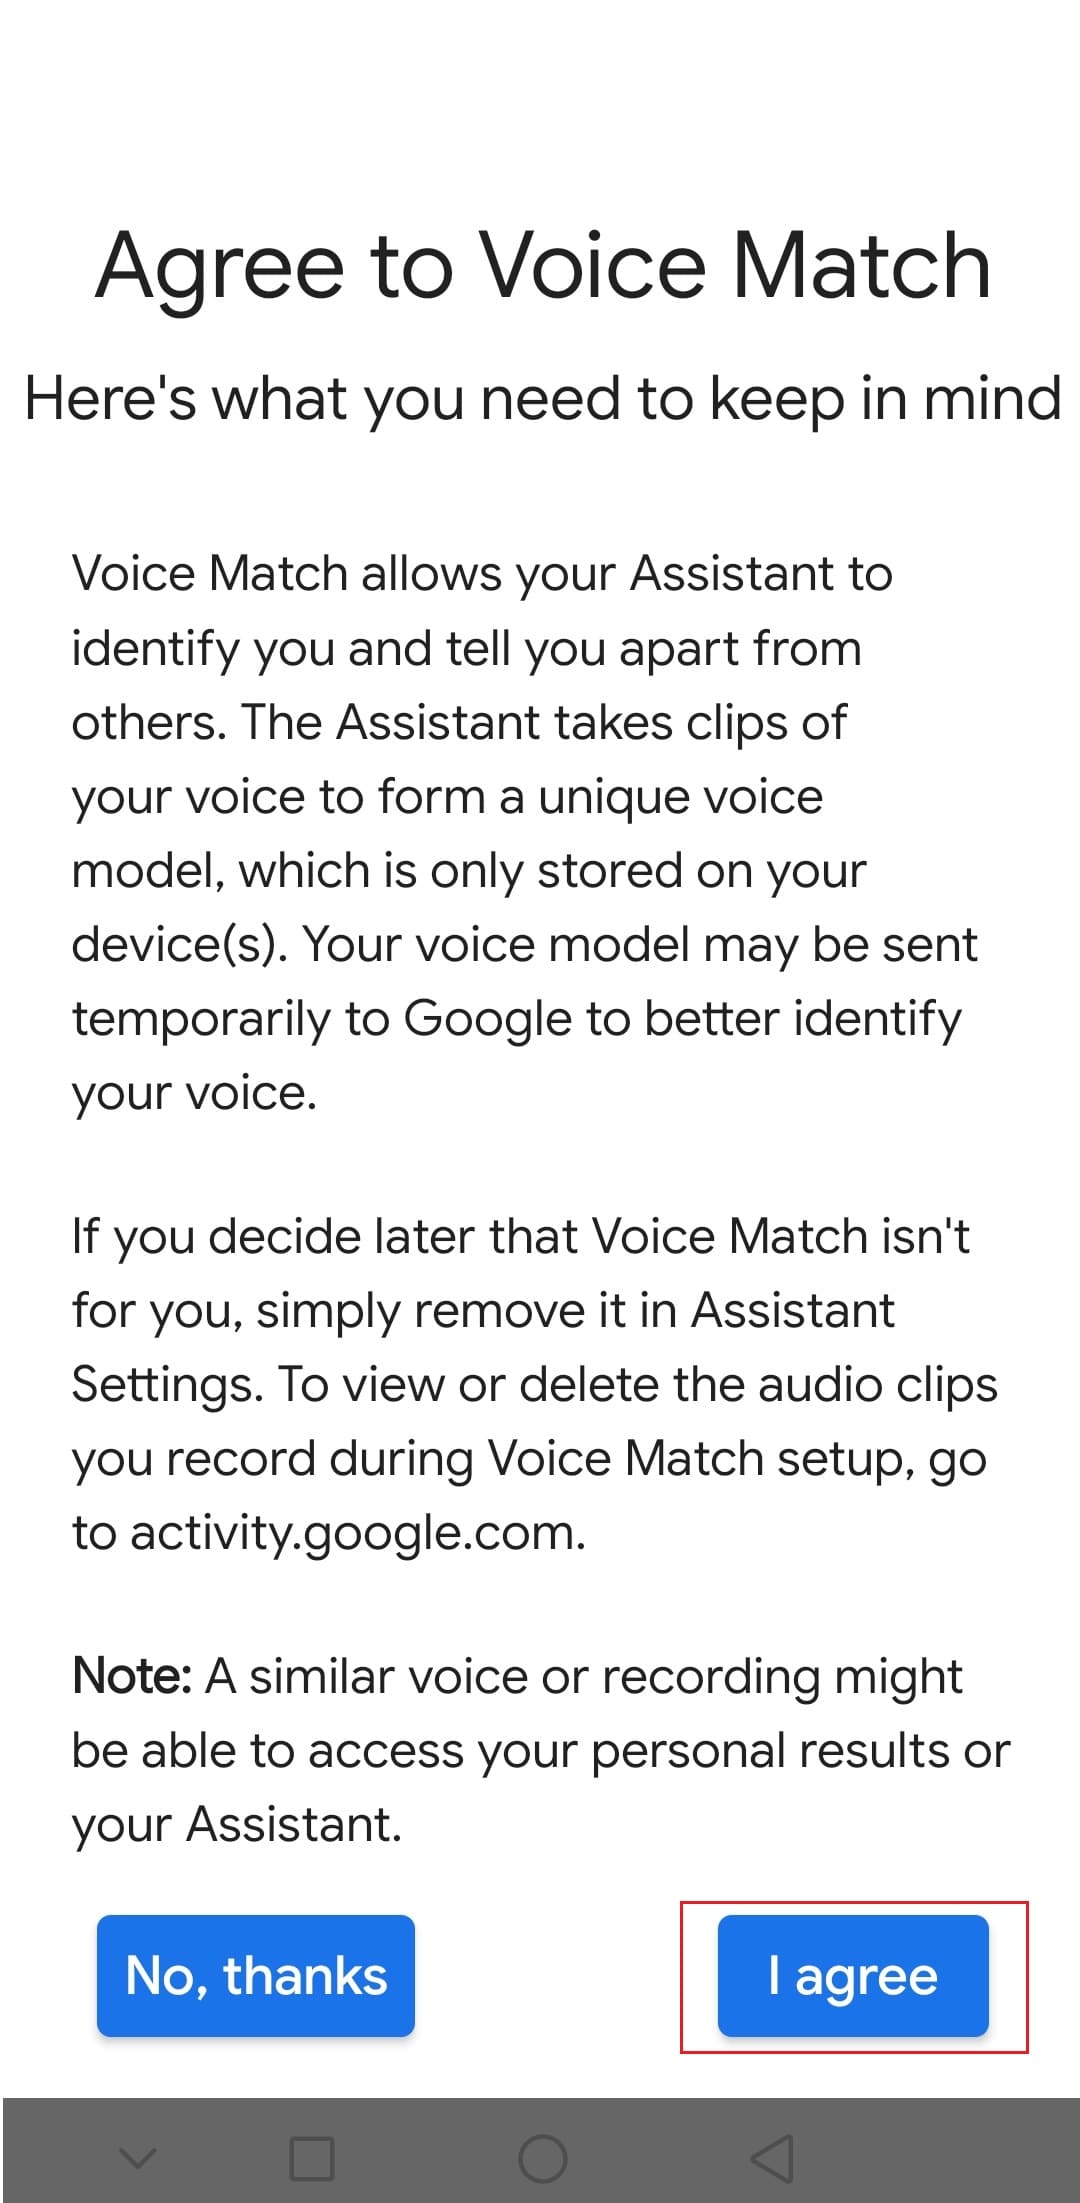 Tippen Sie auf die Option „Ich stimme zu“, um dem Sprachabgleich in der Google Android-App zuzustimmen